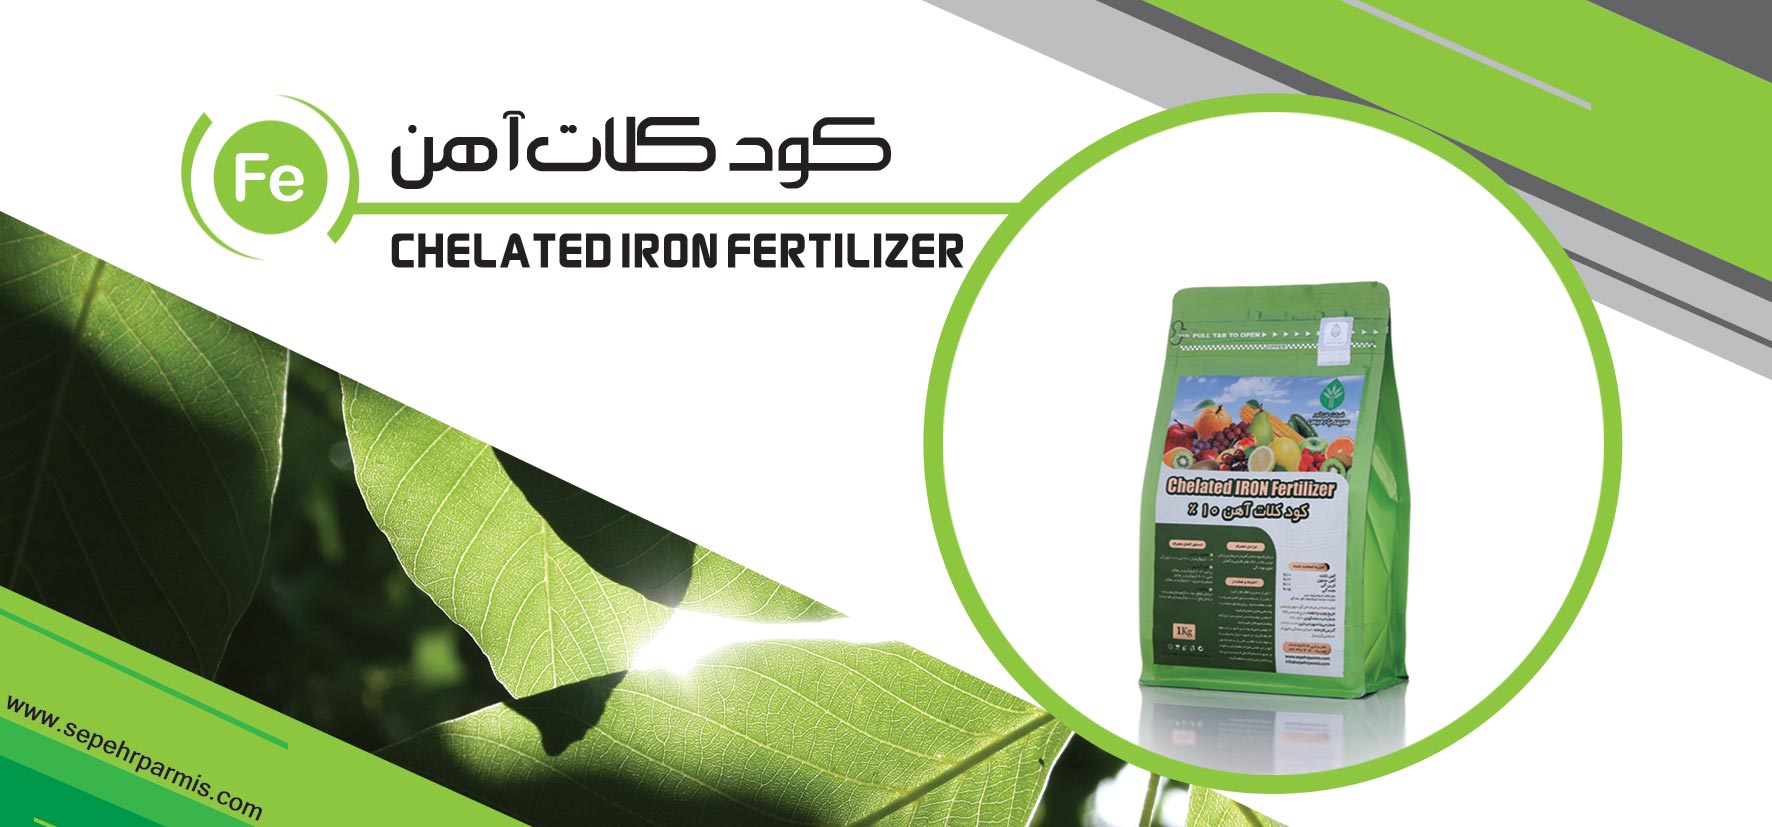 chelate iron fertilizer